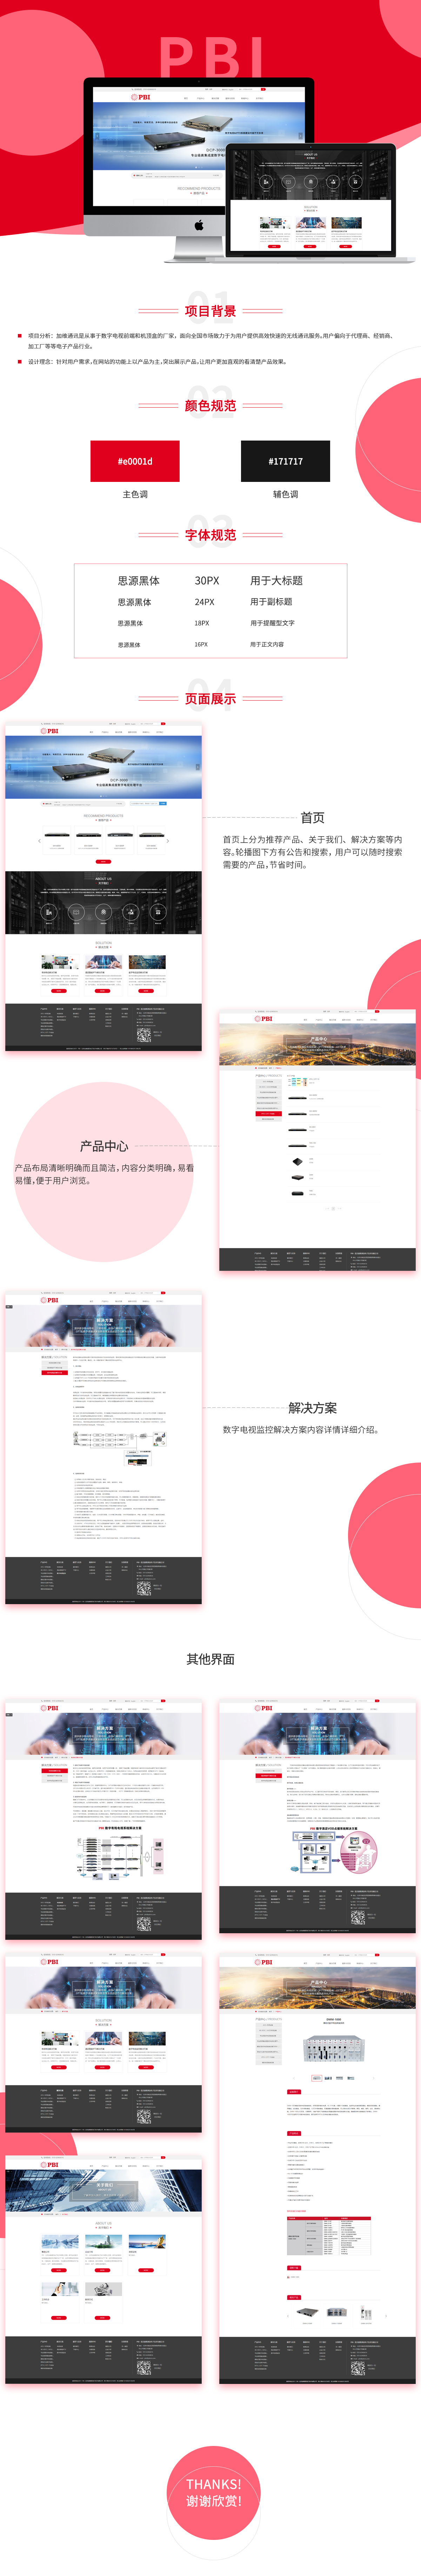 北京加维通讯电子技术有限公司品牌网站案例